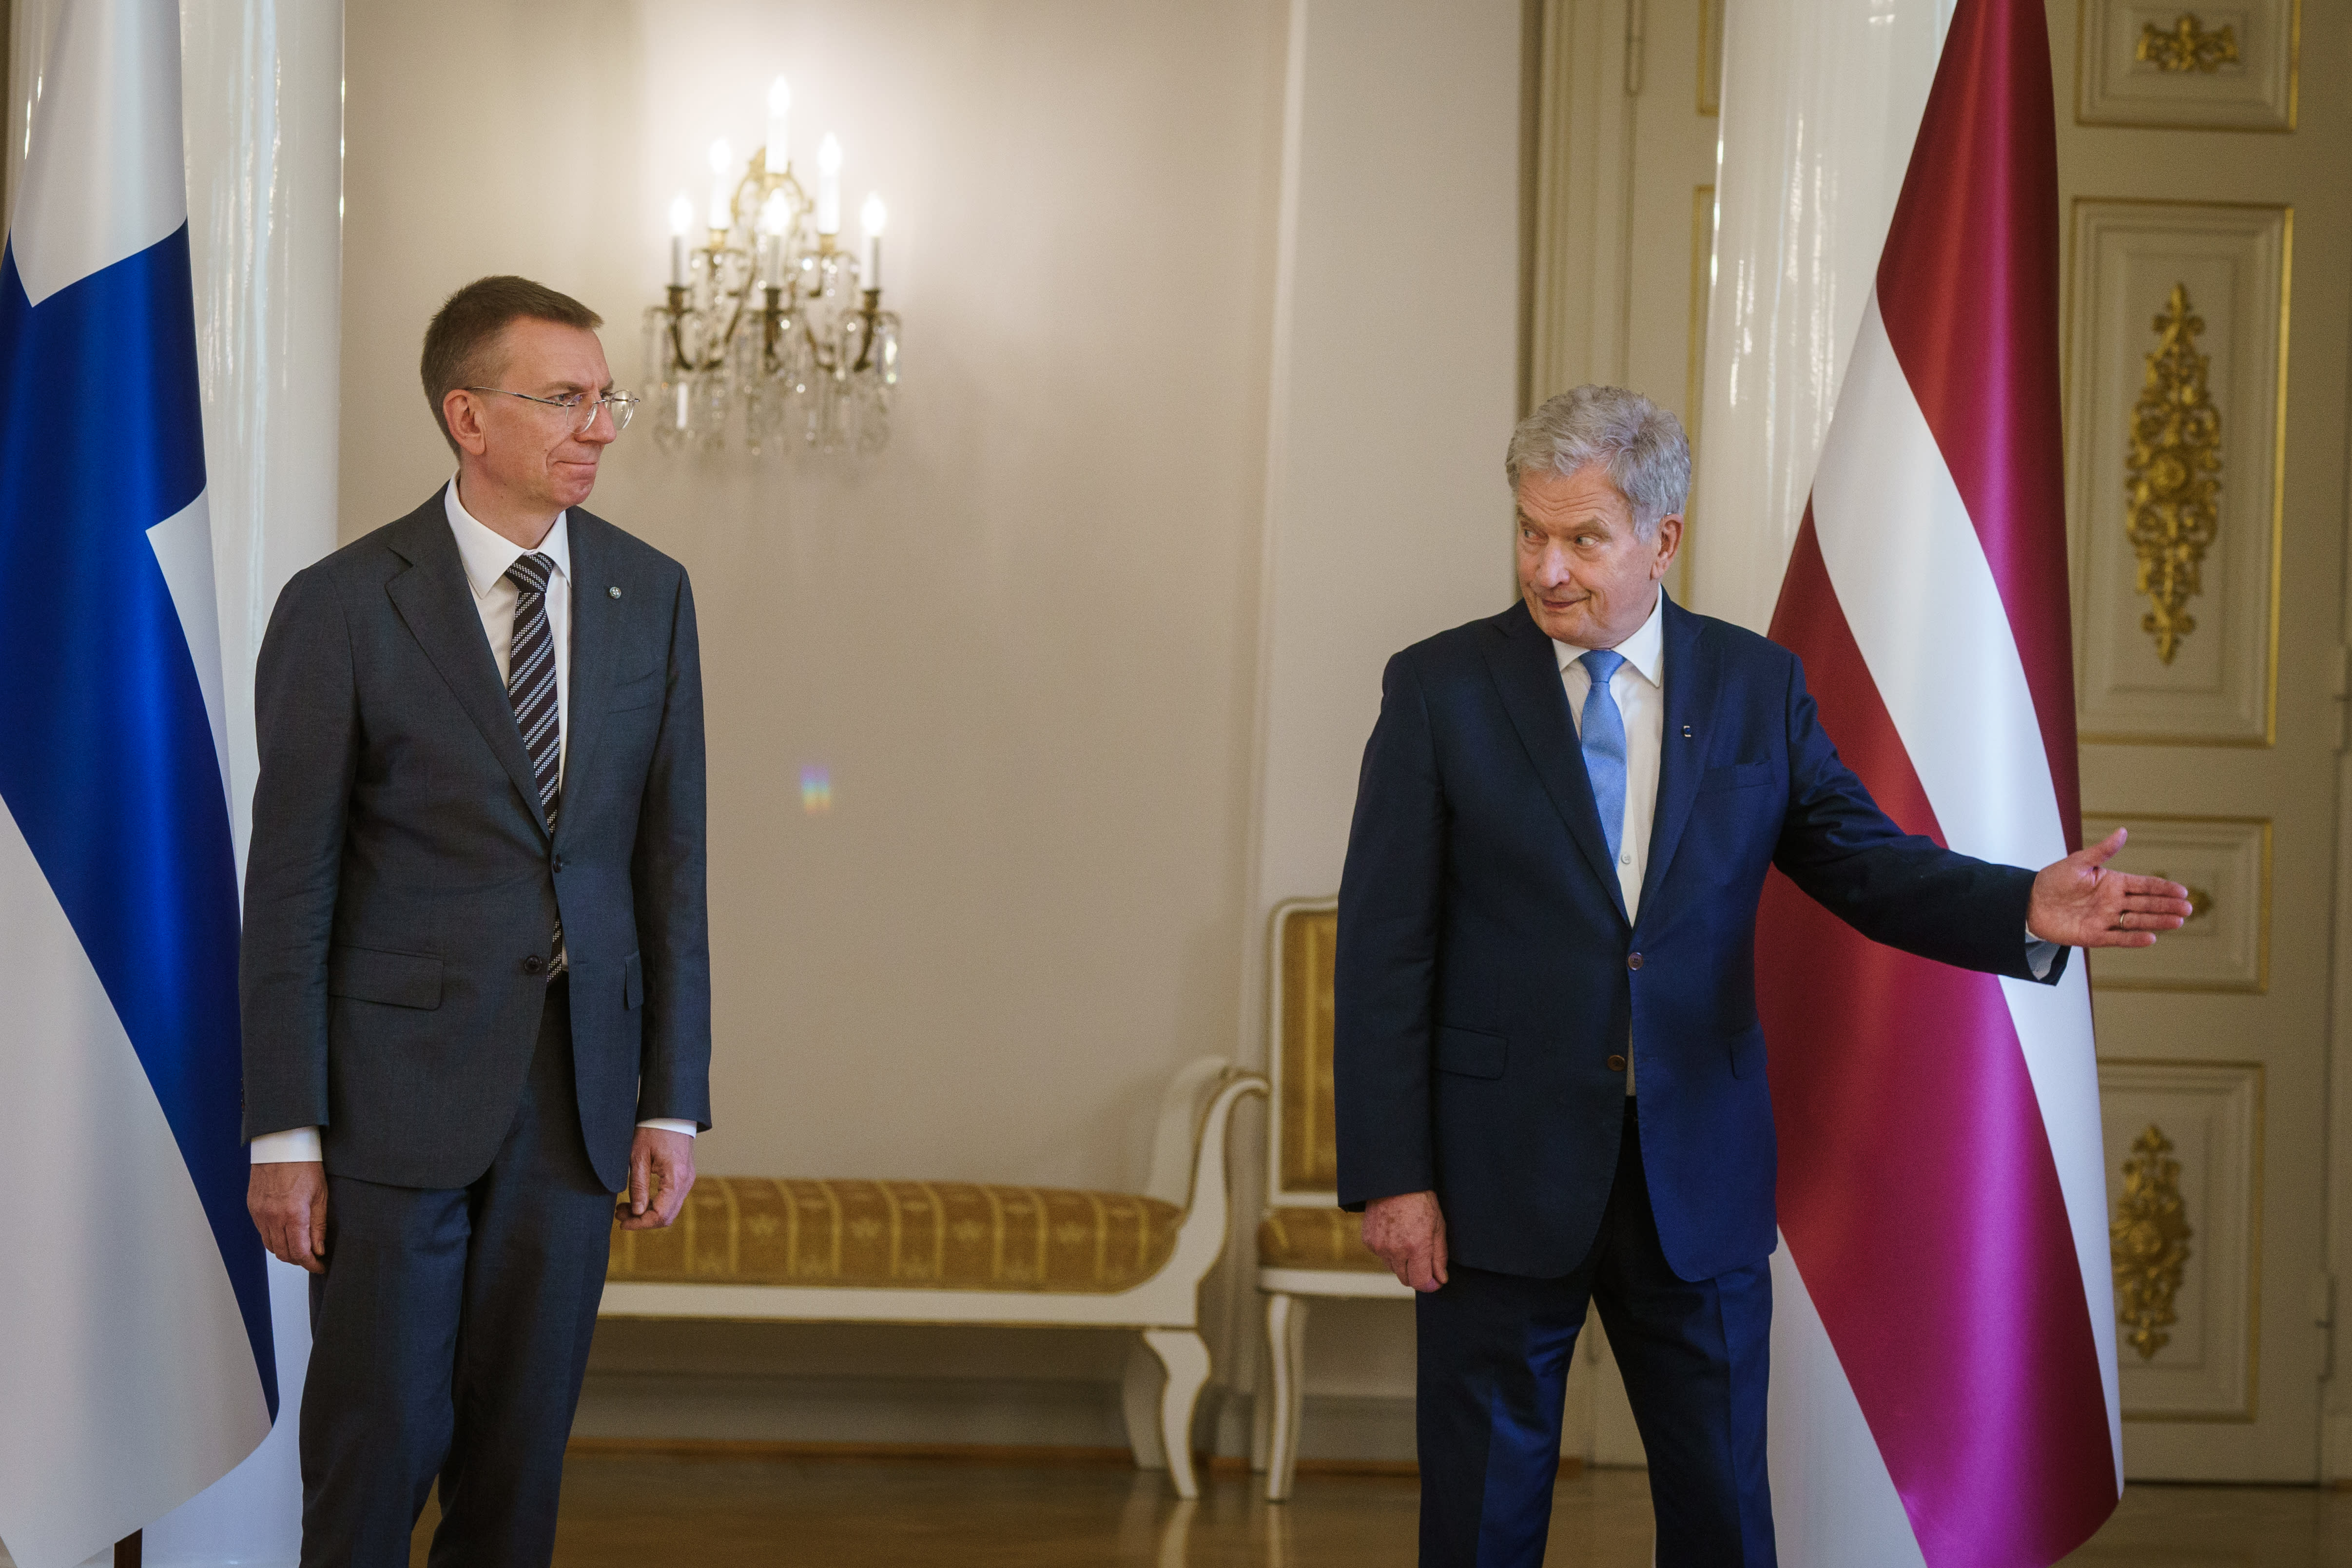 핀란드 대통령과 외무장관은 라트비아와 프랑스 장관을 만날 예정입니다.